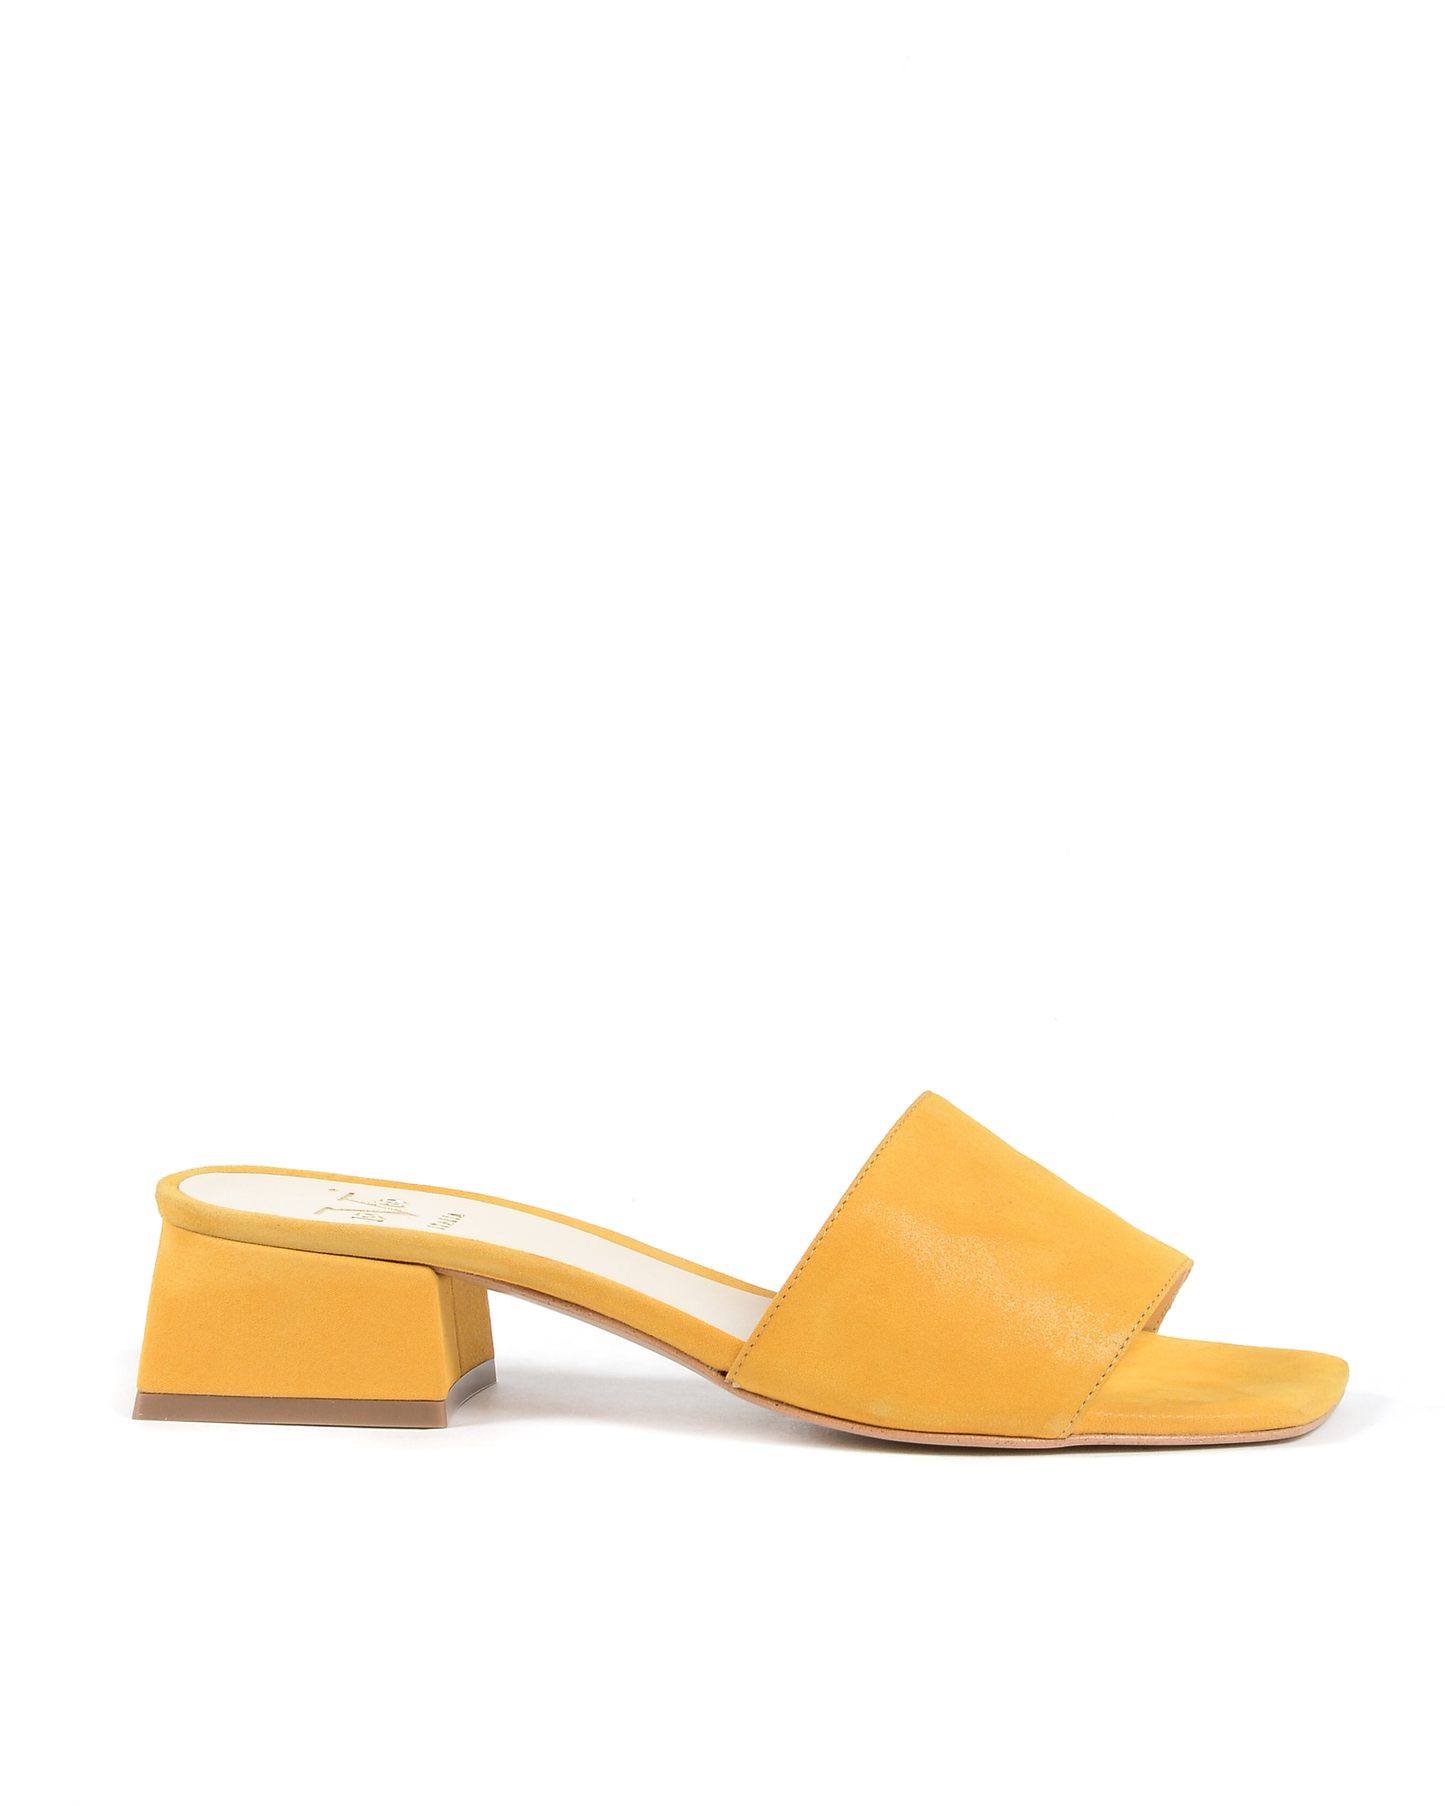 19V69 Italia Womens Sandal Yellow 4909 PELLE AMBER